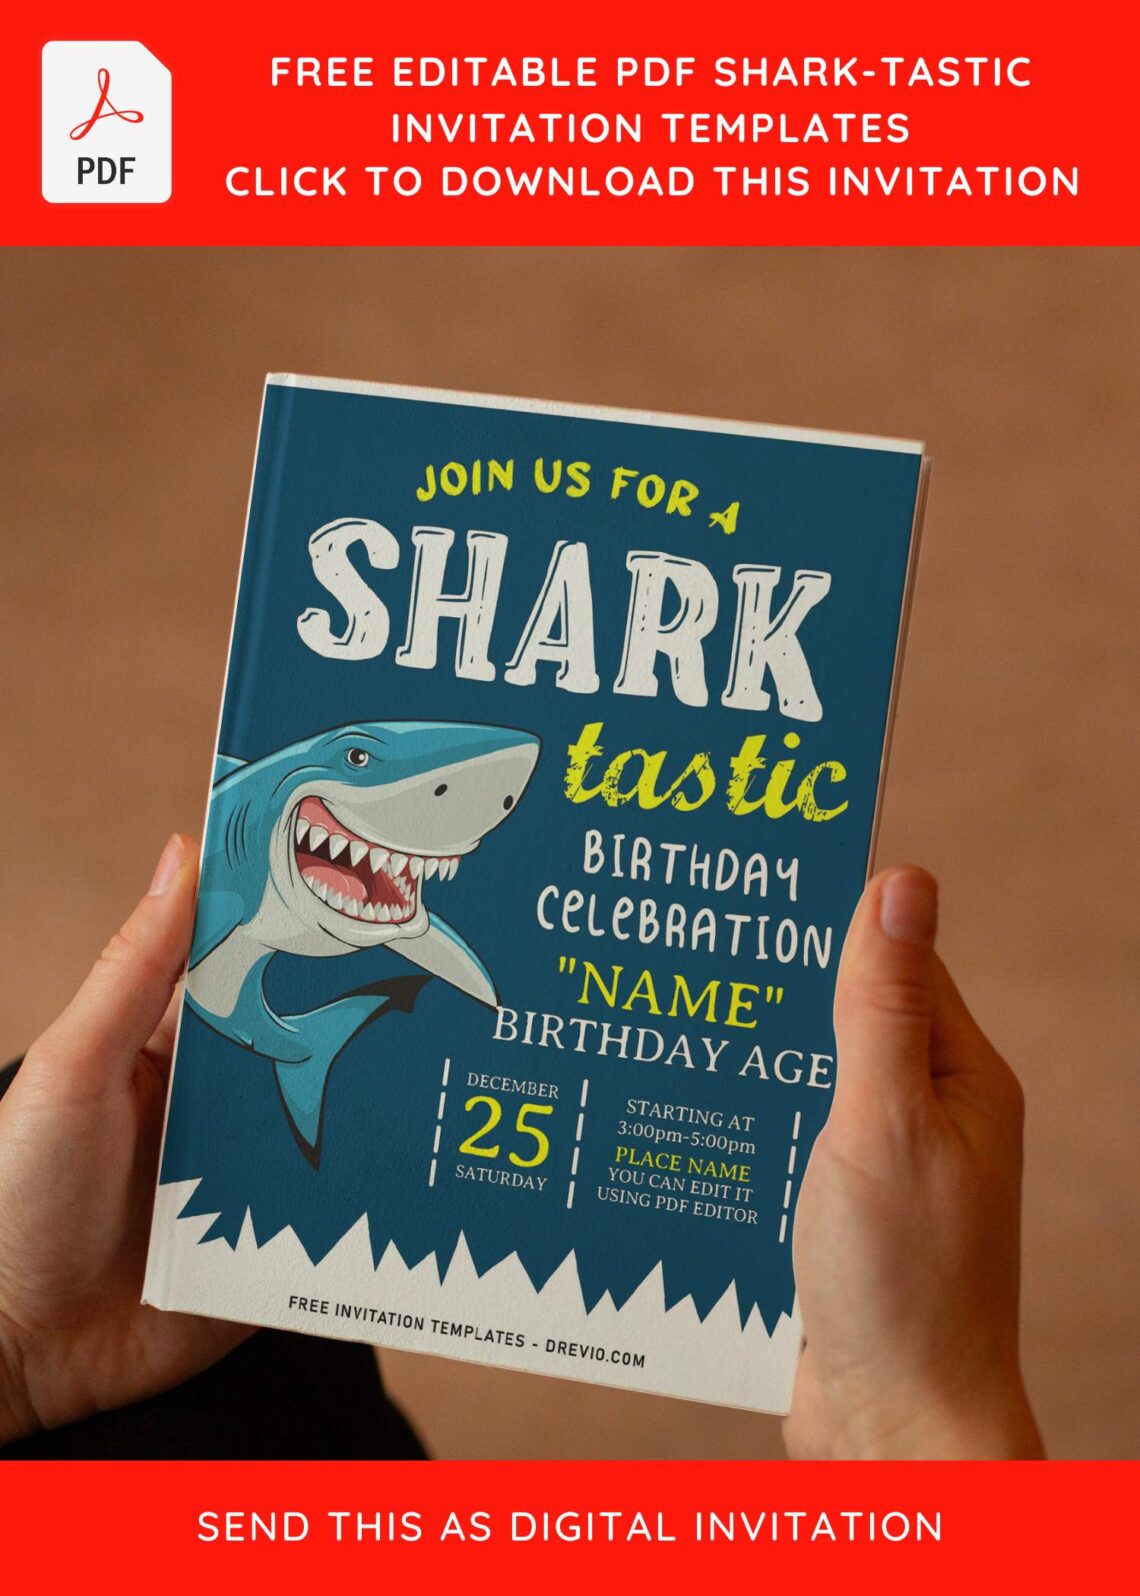 free-editable-pdf-cute-shark-tastic-birthday-invitation-templates